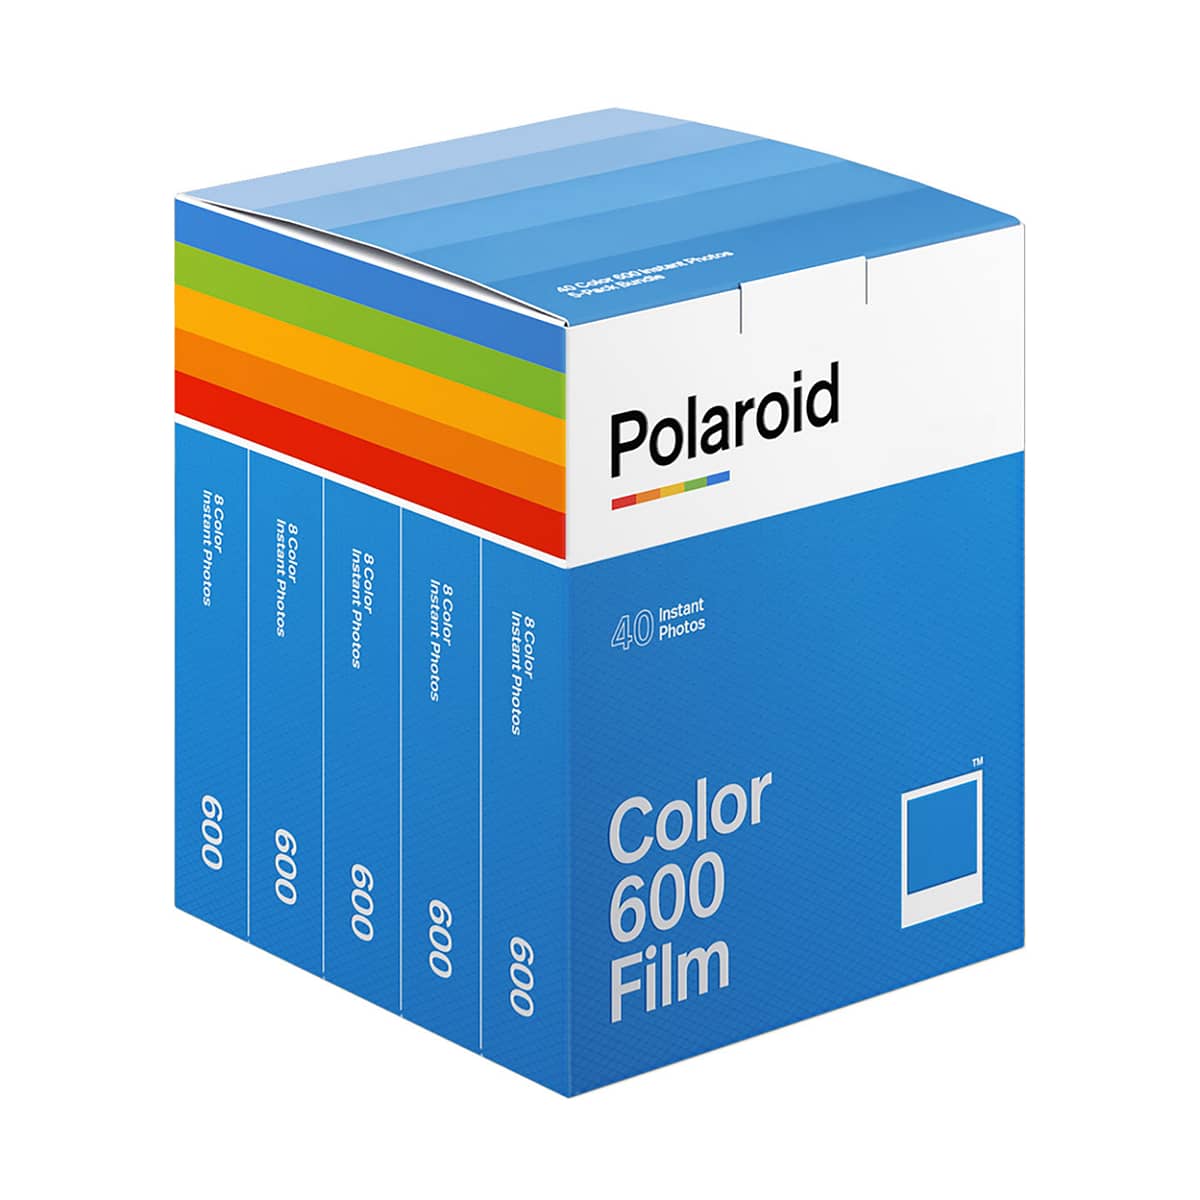 polaroid_600_color_film_5p_01